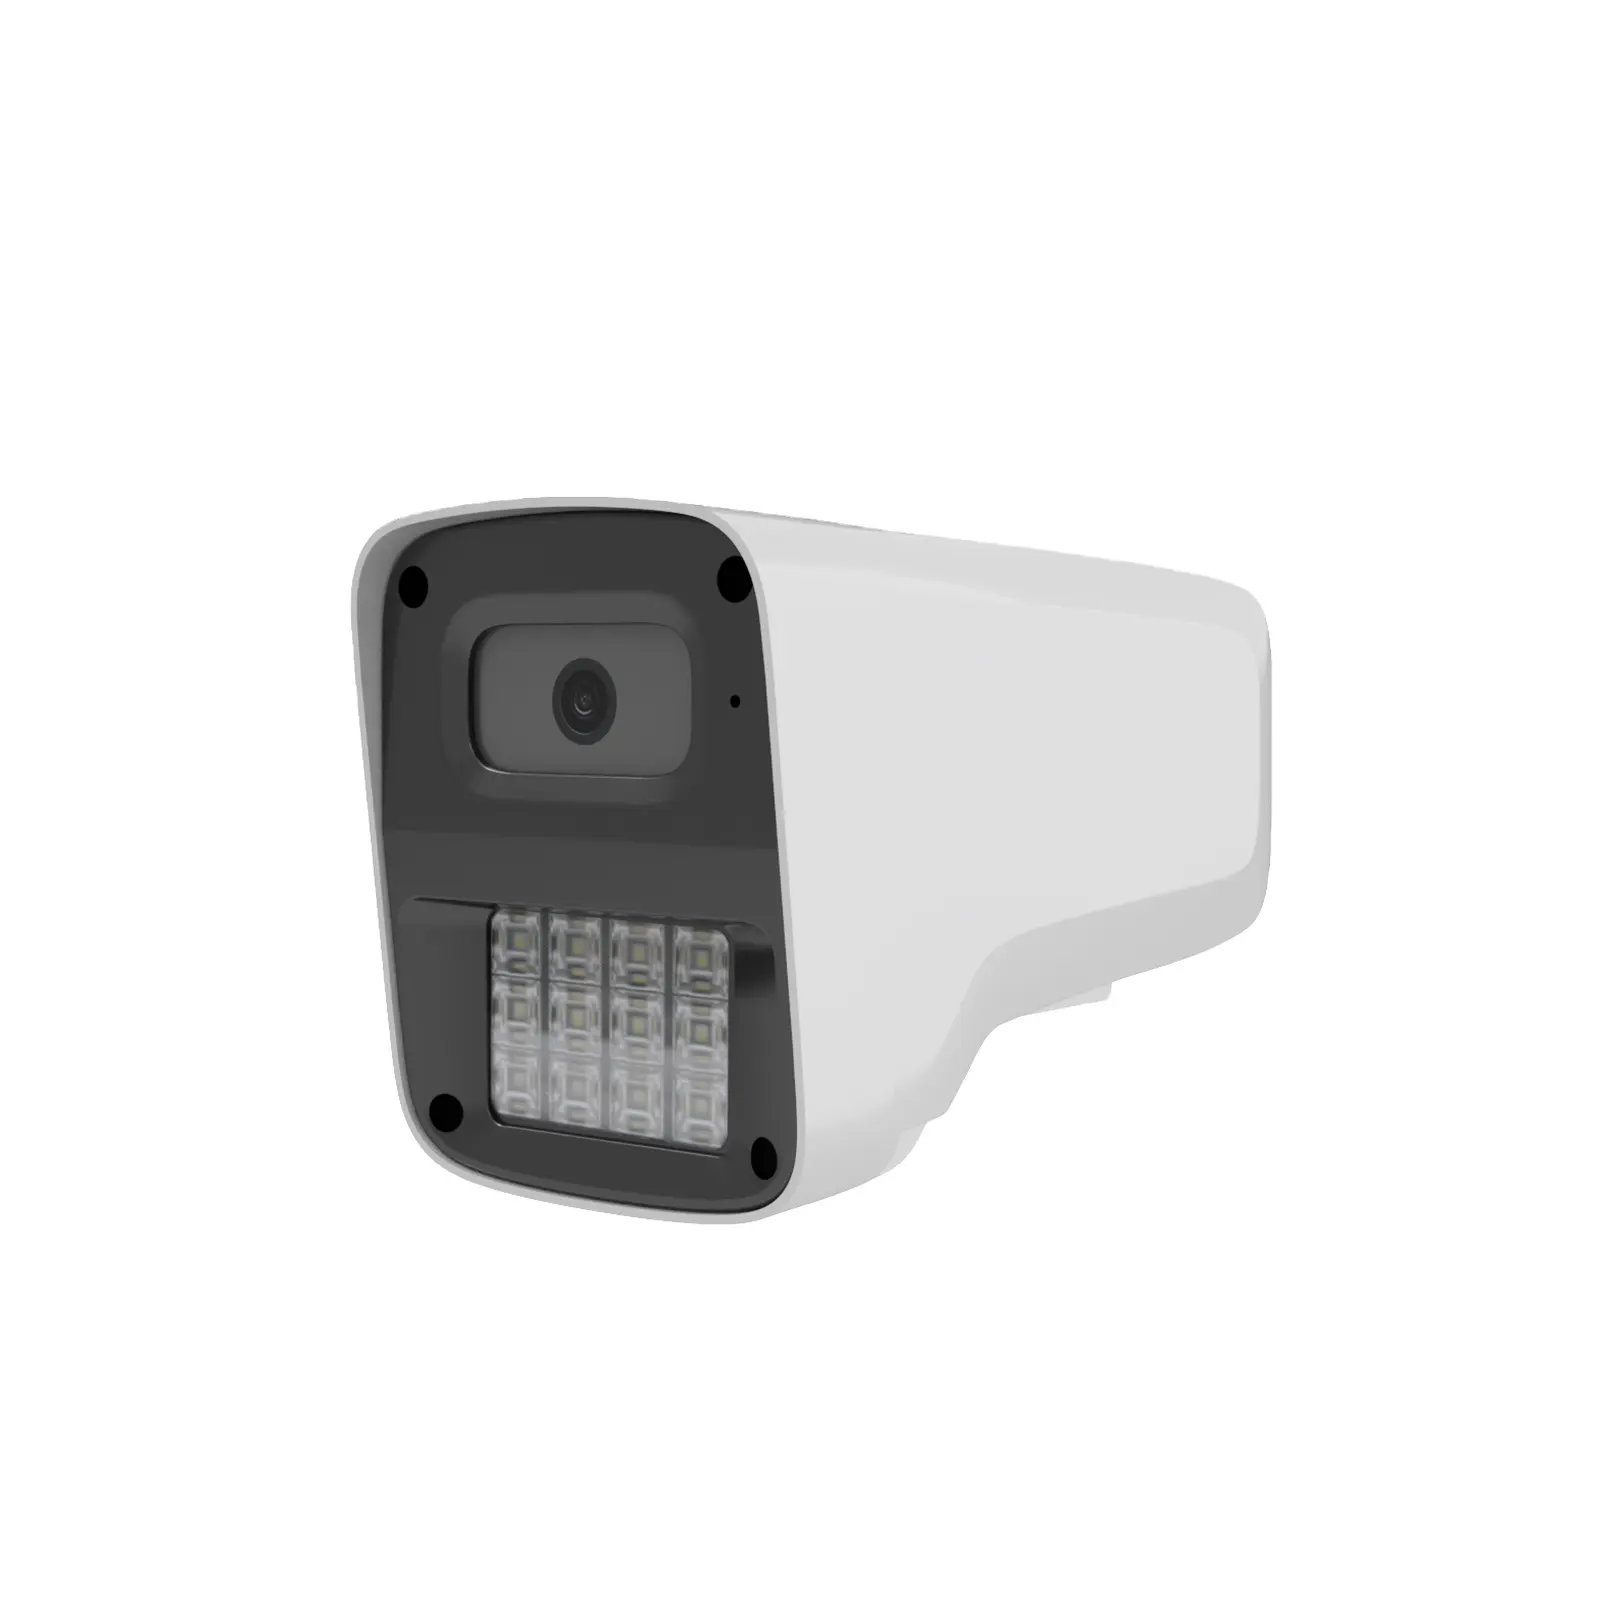 새로운 디자인 4MP 풀 컬러 야간 투시경 POE IP 카메라 IR 양방향 오디오 CCTV 보안 감시 네트워크 돔 카메라 2K